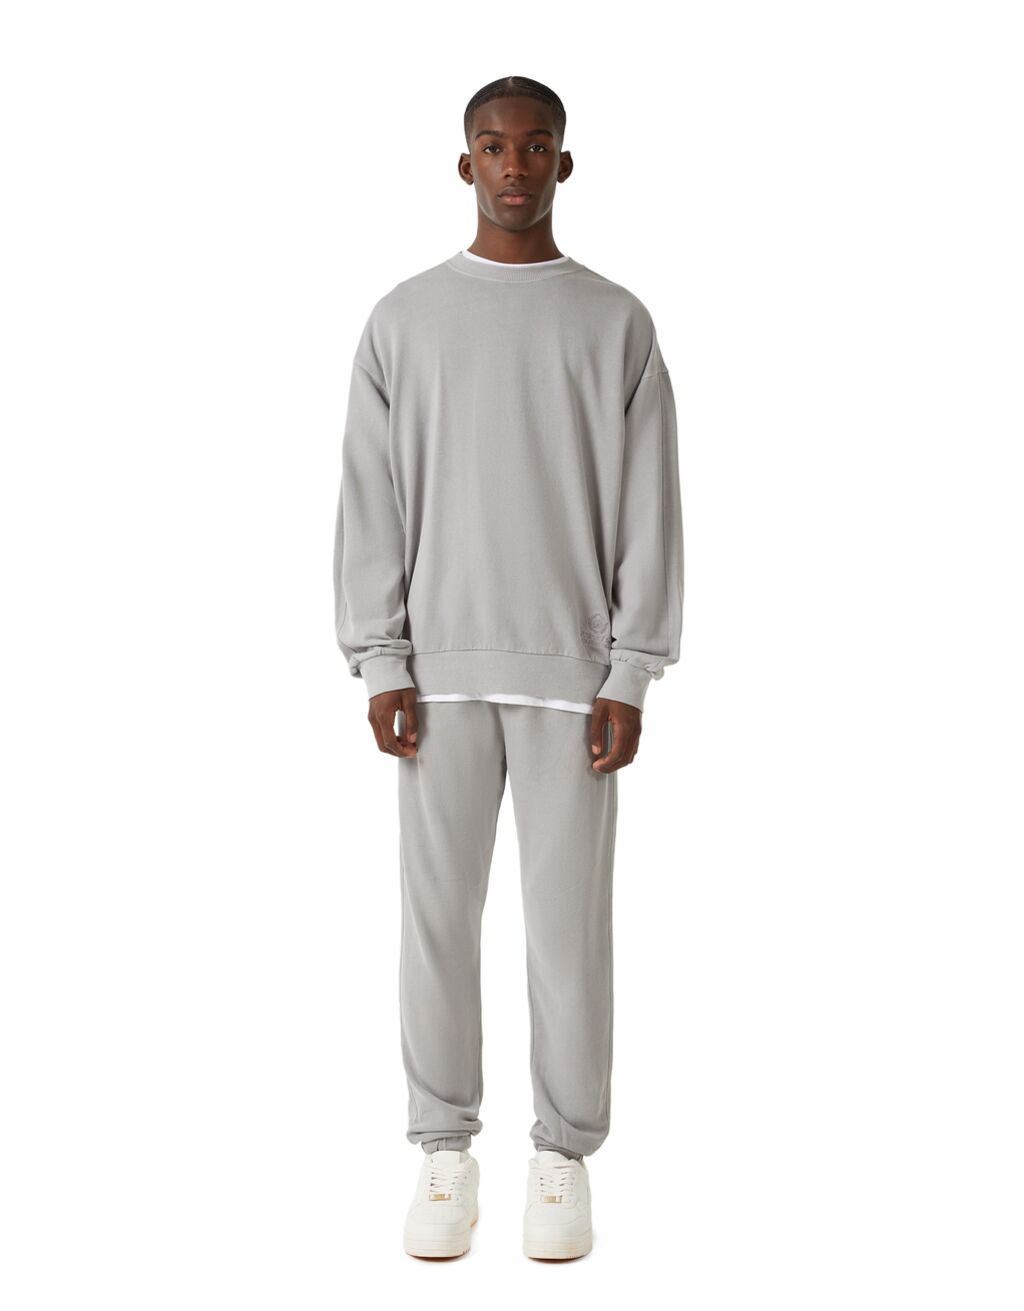 Faded-effect sweatshirt and pants set